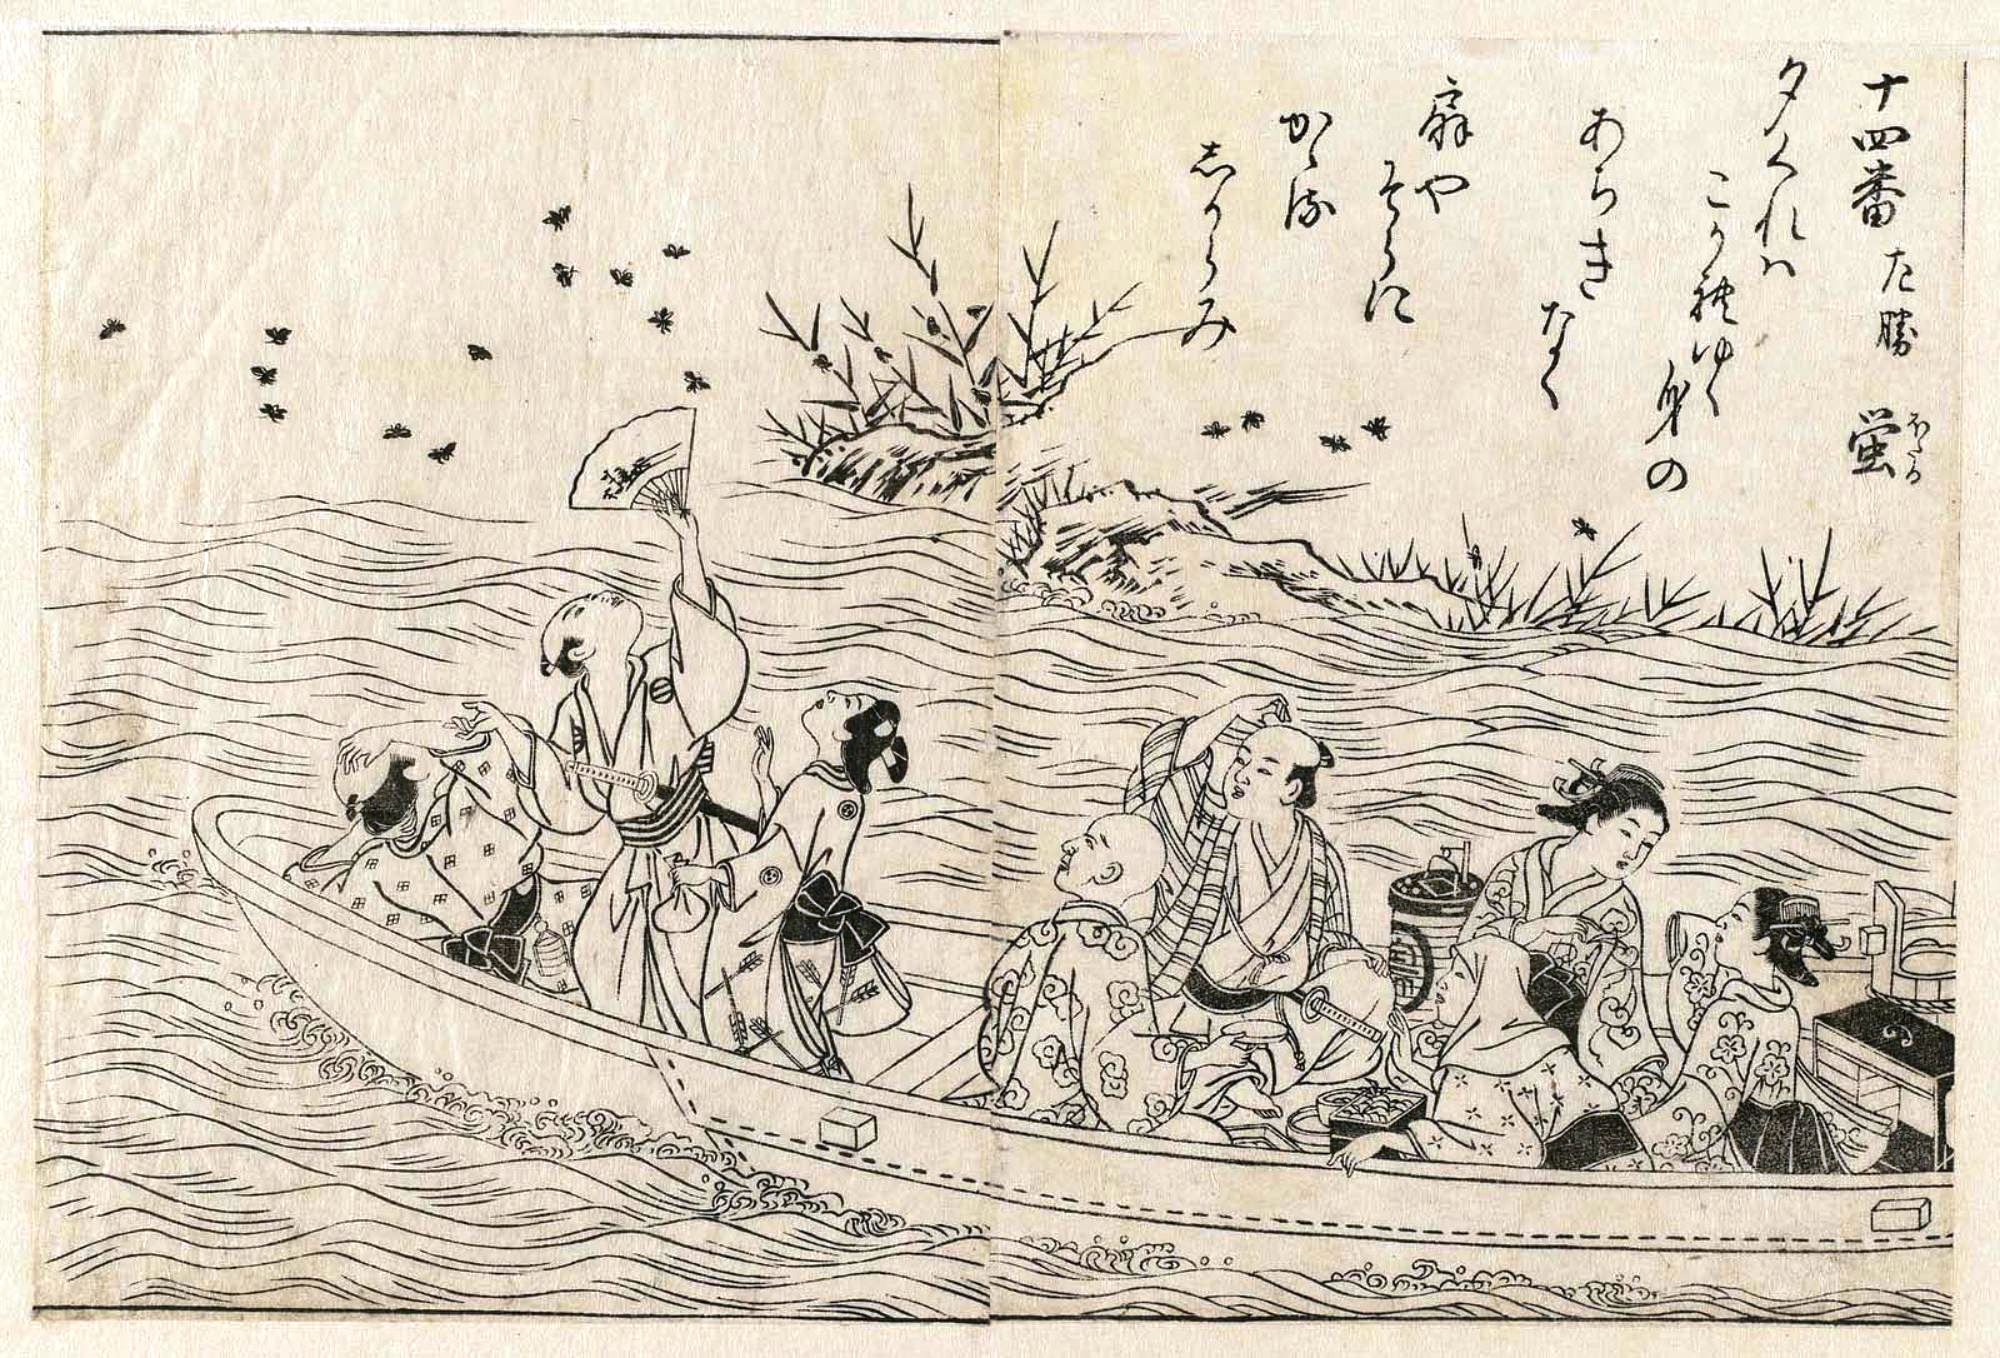 Нисикава Сукэнобу. "Общество в прогулочной лодке". Из альбома "Ehon Makusu-ga-hara", том 3, Листы 8-9. 1759.